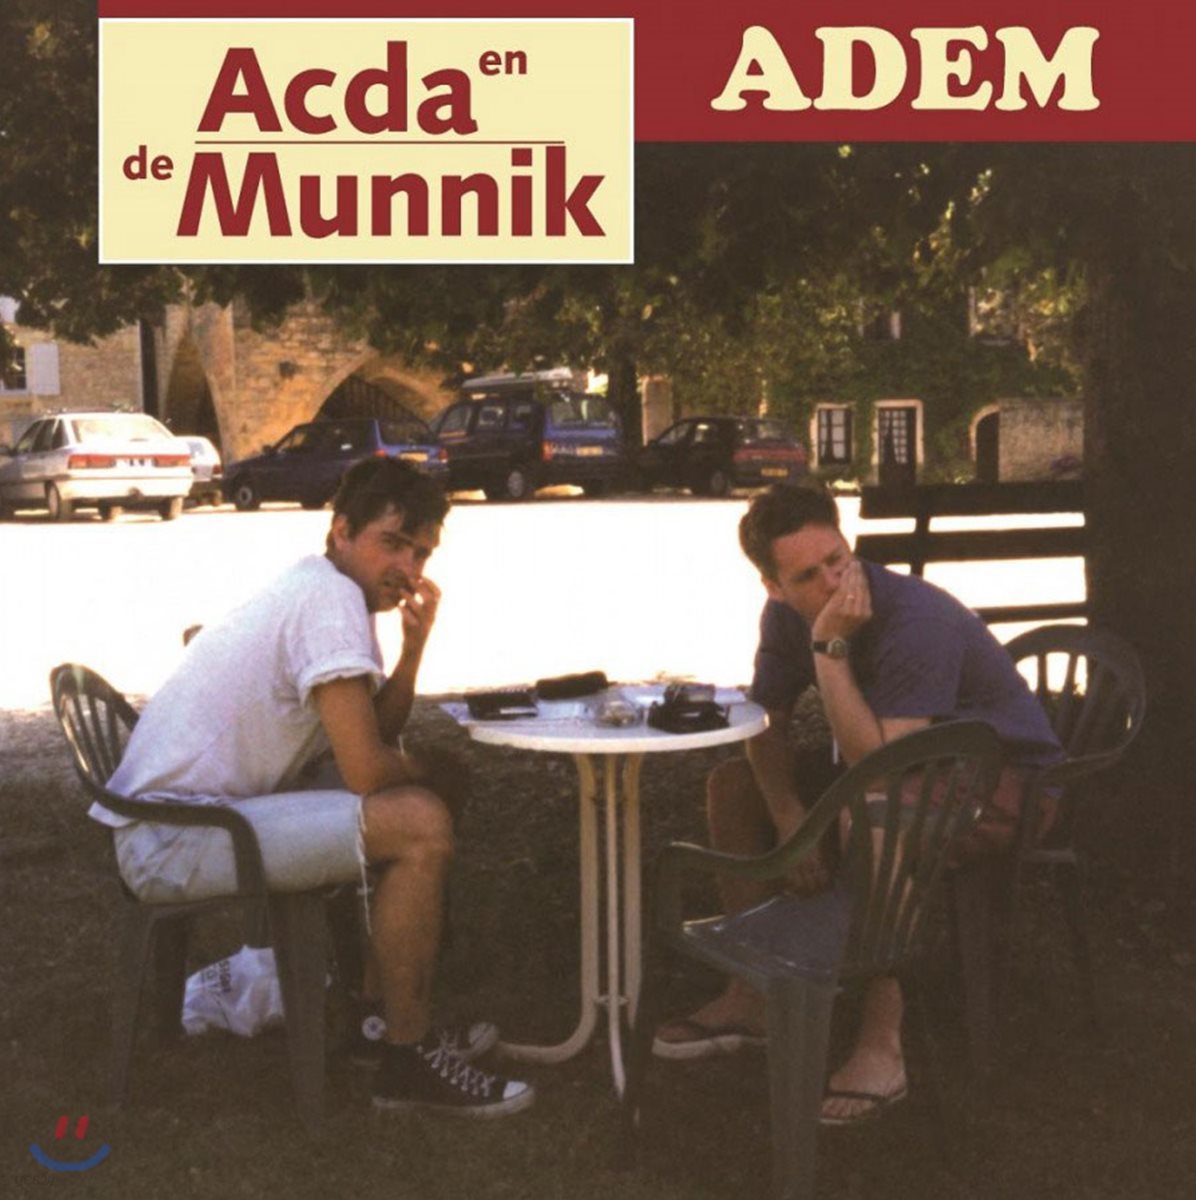 Acda en De Munnik (아크다 앤 데 무니크) - Adem [2LP]